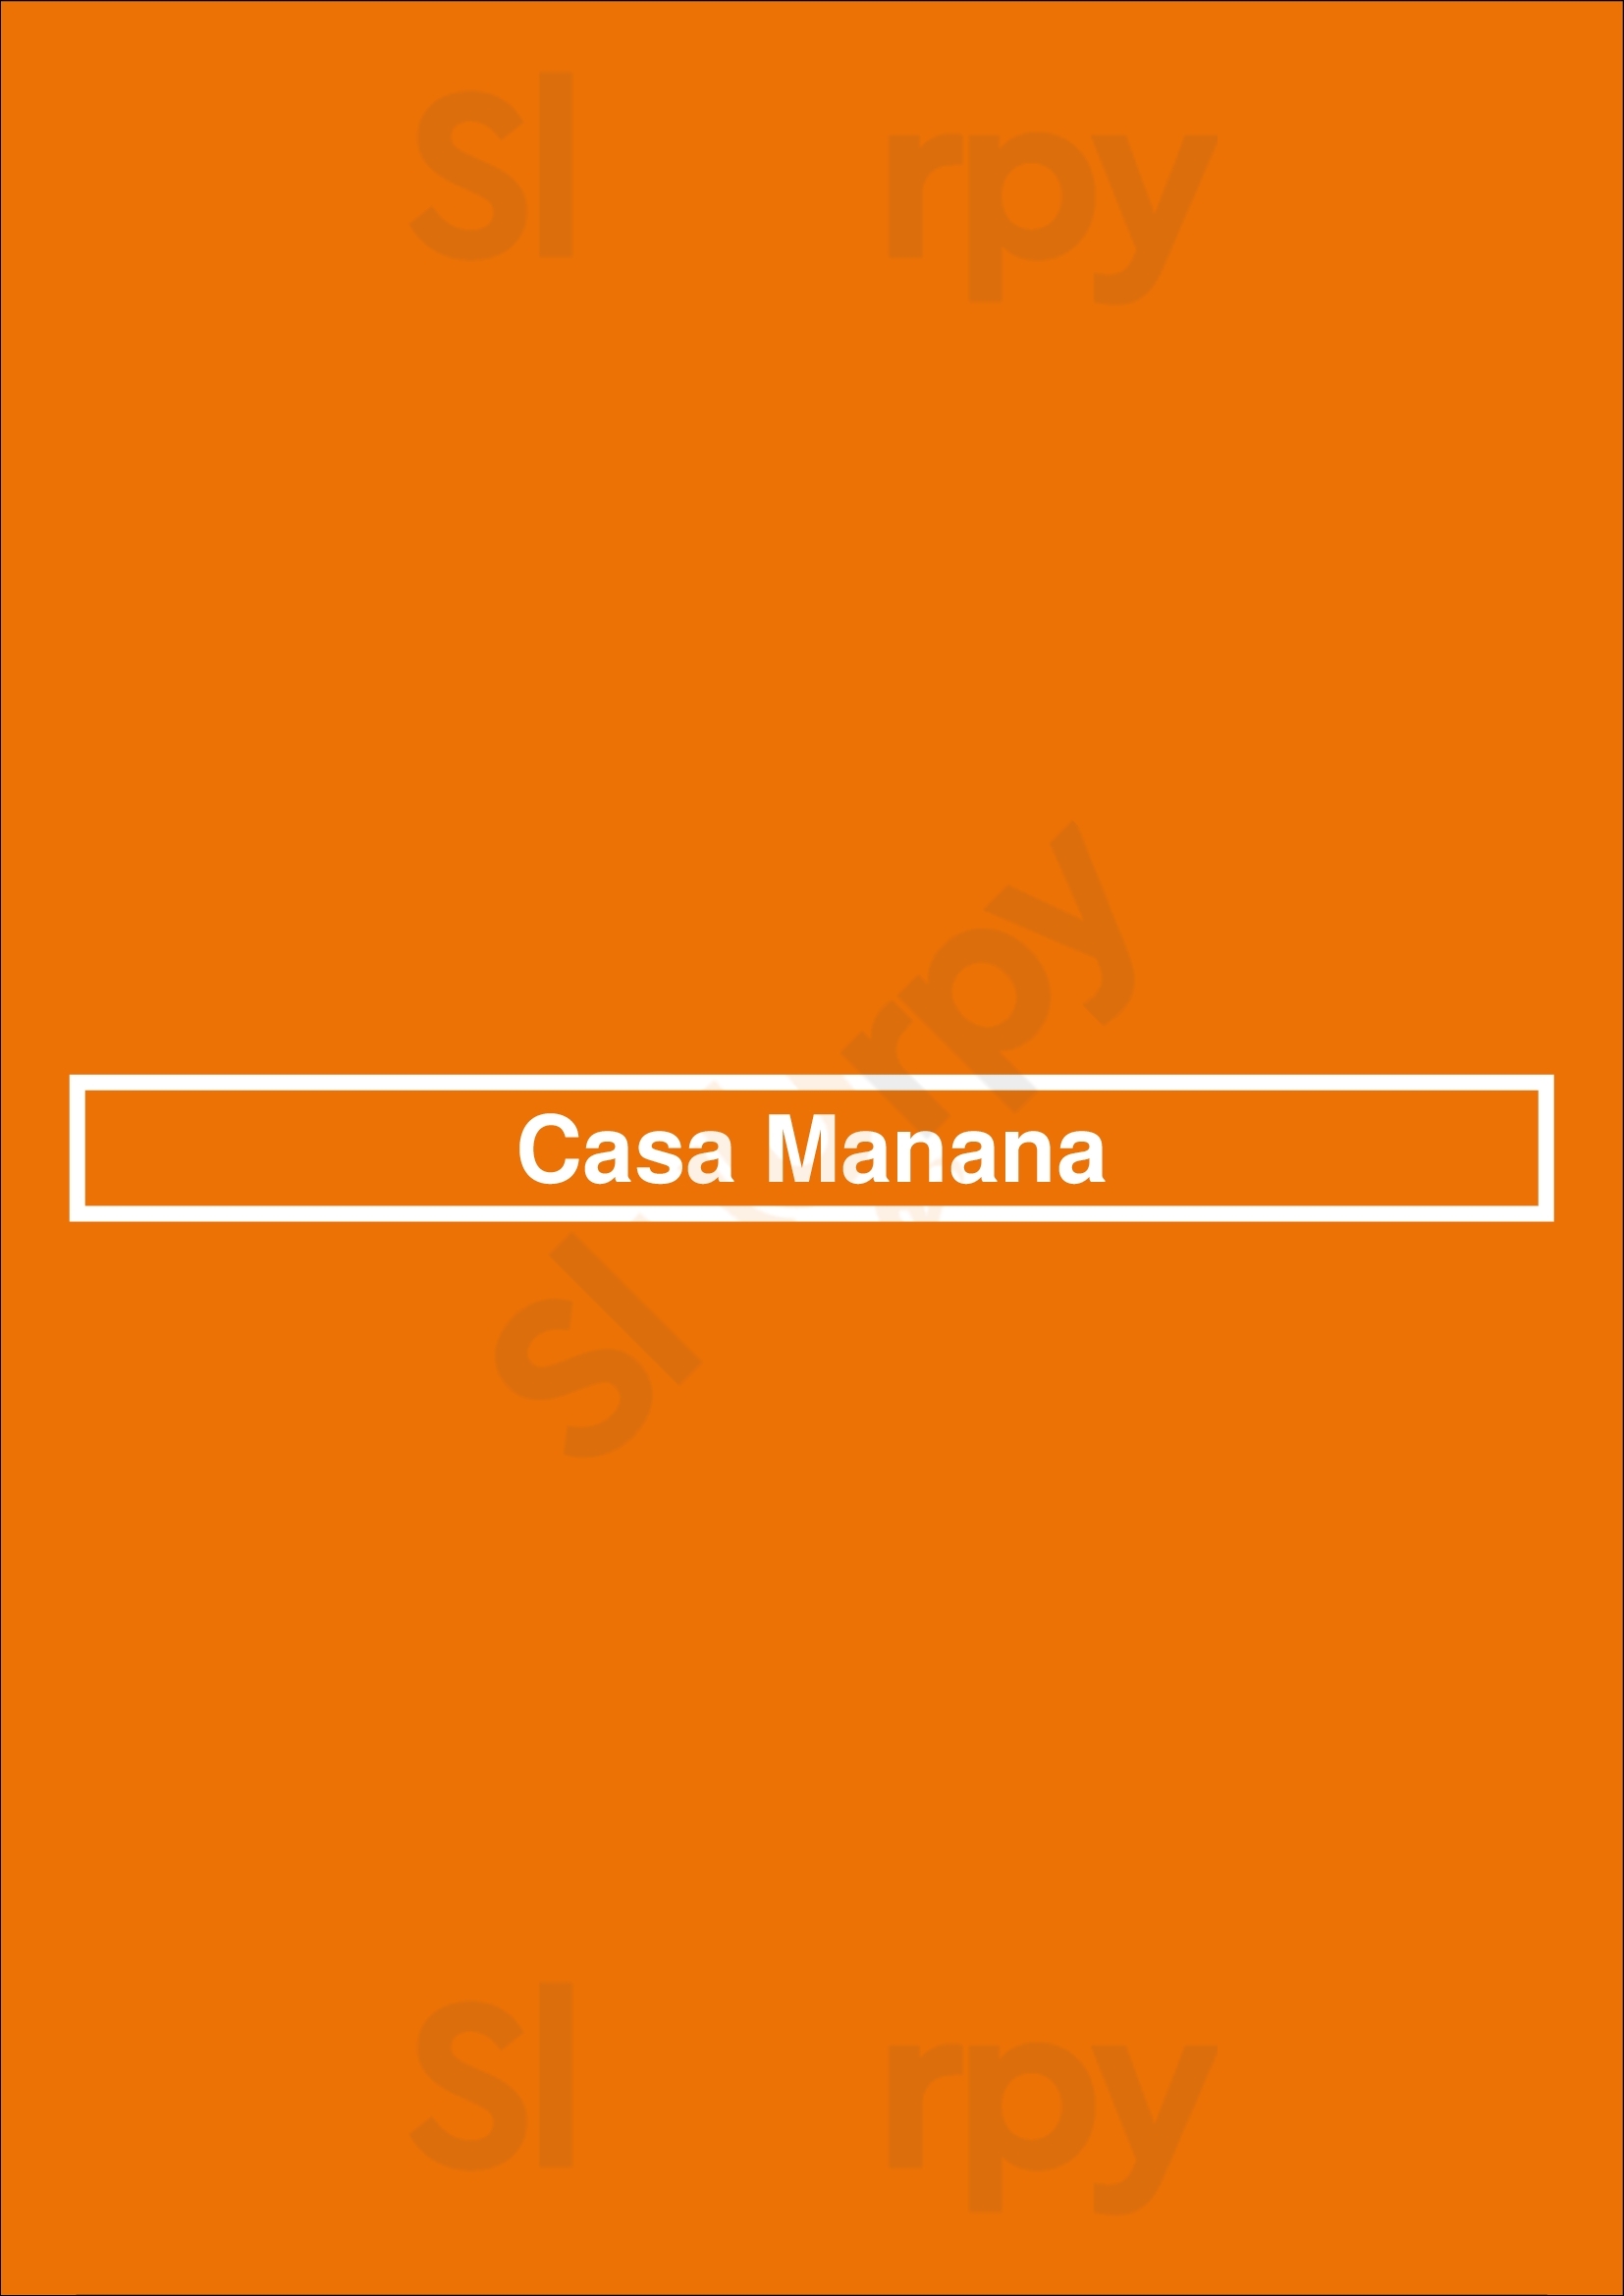 Casa Manana San Rafael Menu - 1